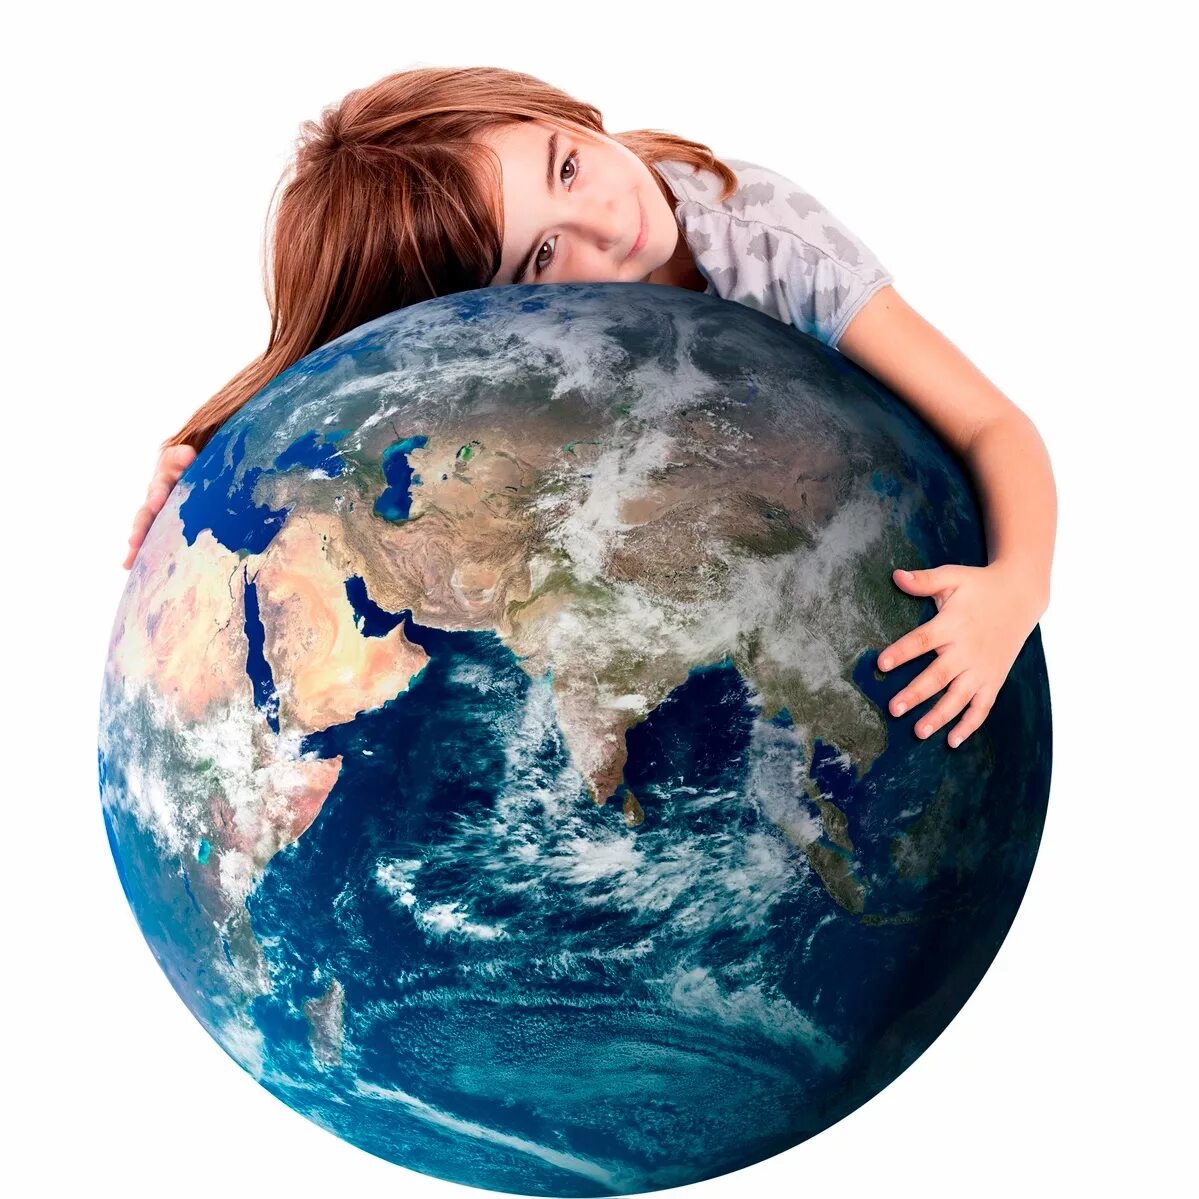 Беседа планета земля. Человек обнимает планету. Обнять планету. Руки обнимающие земной шар. Ребенок обнимает земной шар.